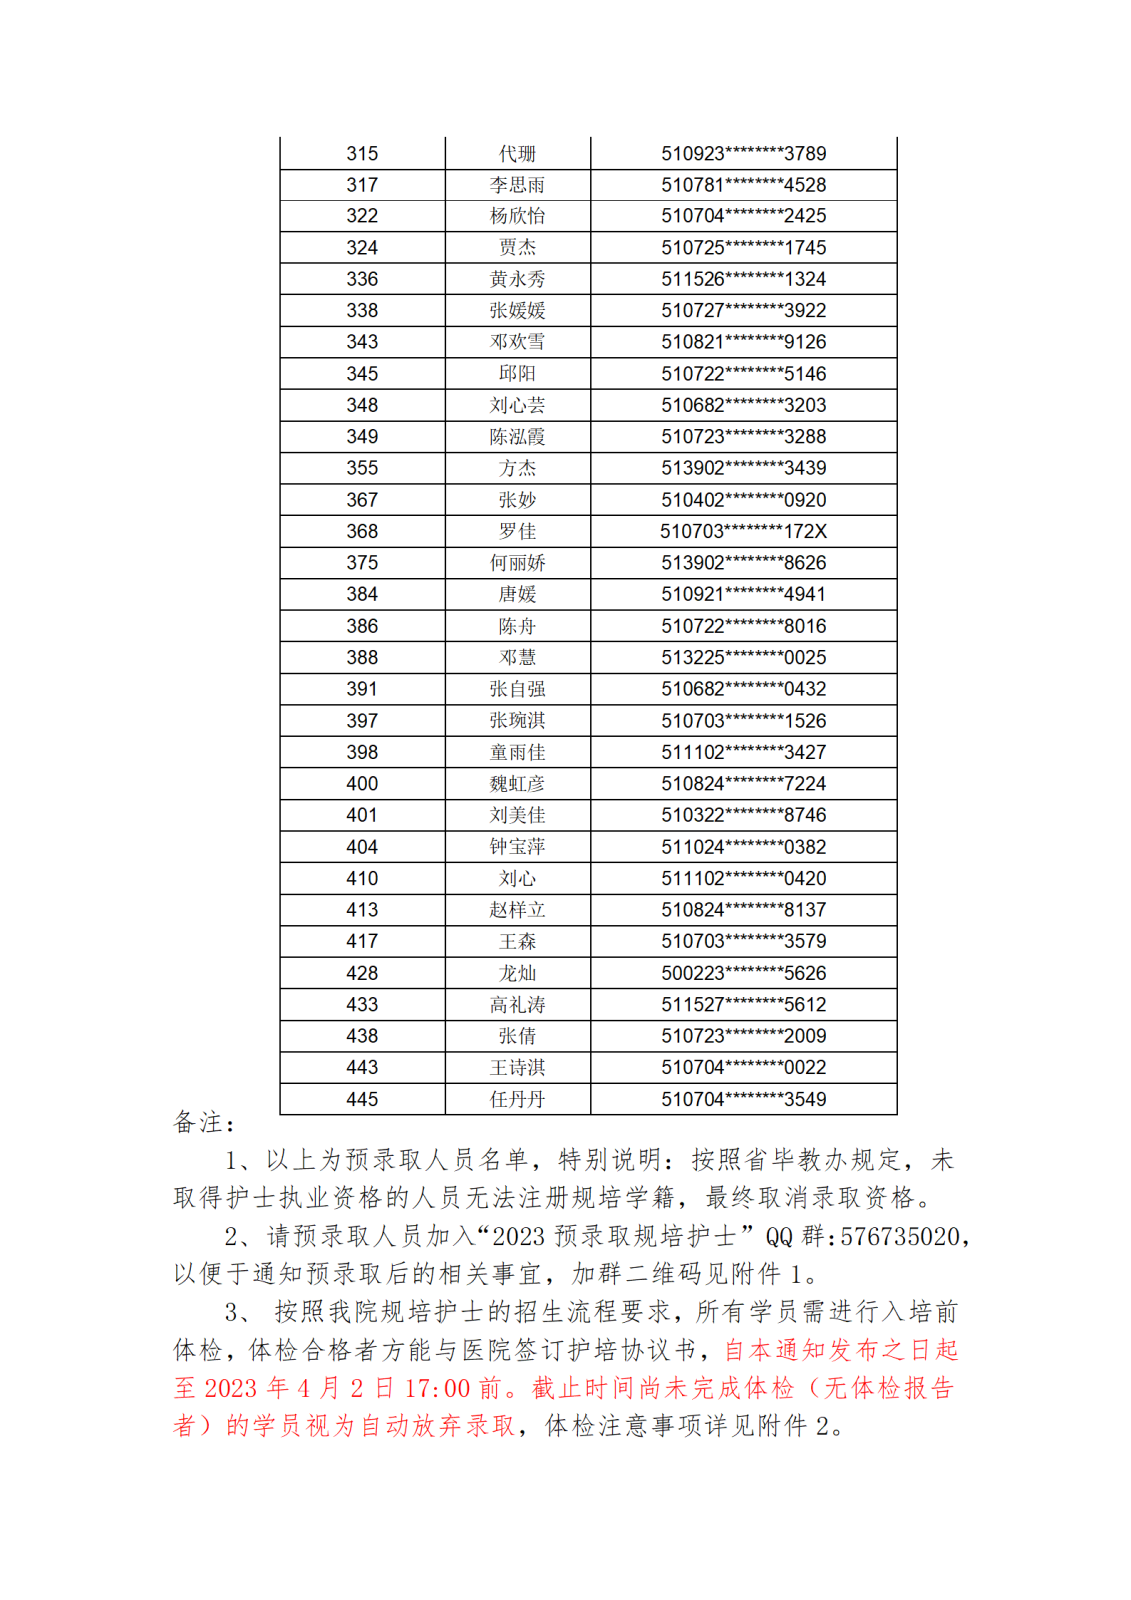 2023年护士规范化培训招生预录取名单_03.png